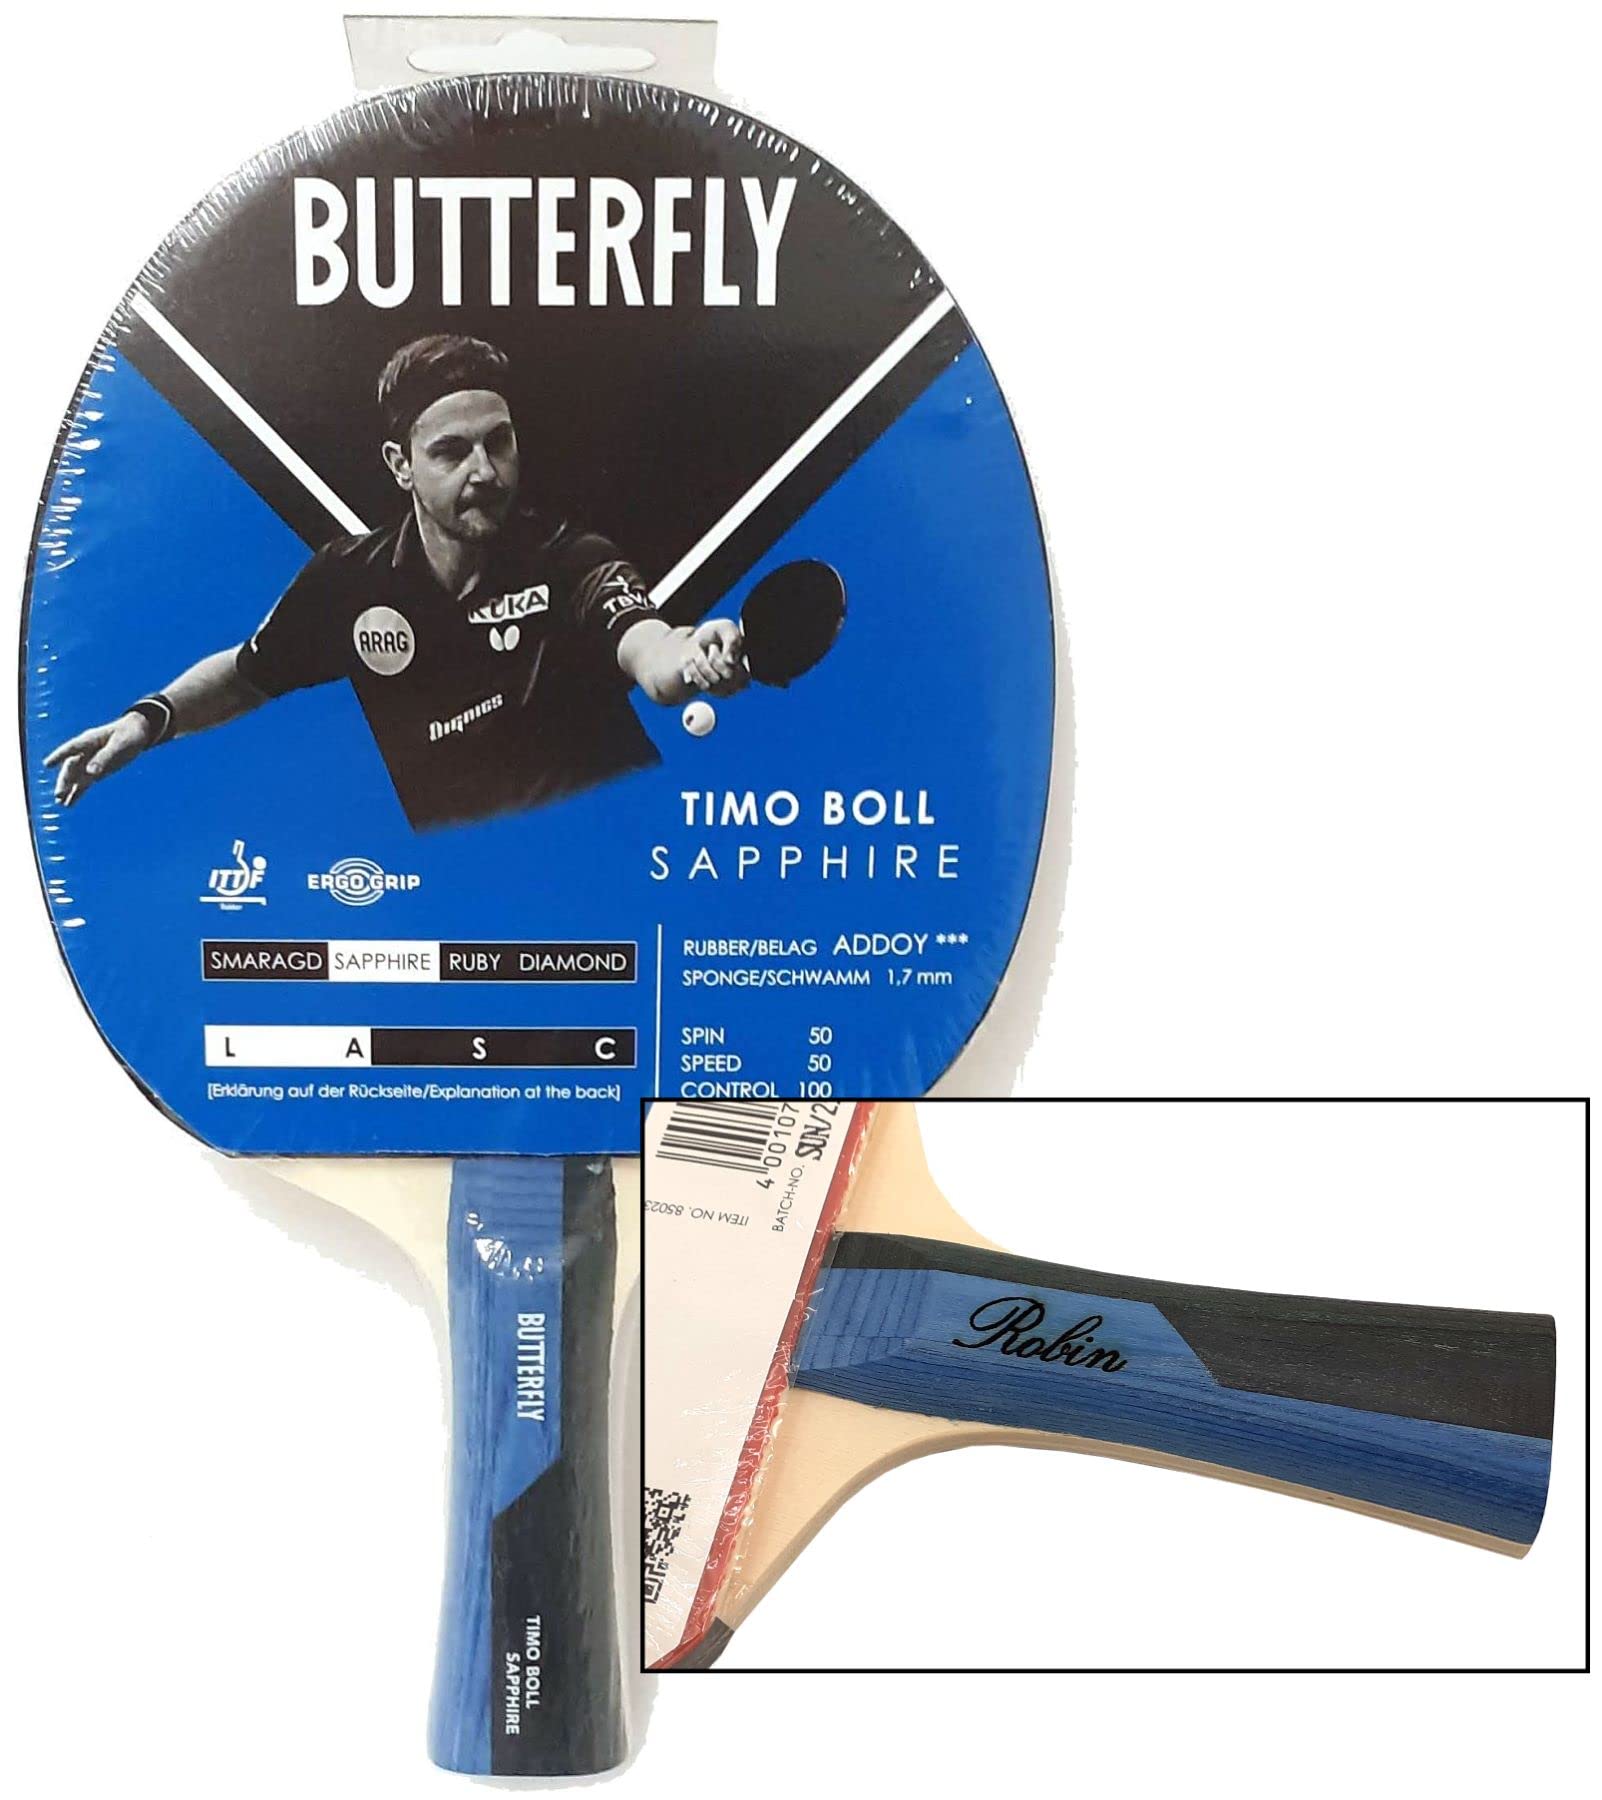 Timo Boll Sapphire Tischtennis Schläger von Butterfly mit individueller Gravur, die Geschenk Idee für Tischtennisspieler